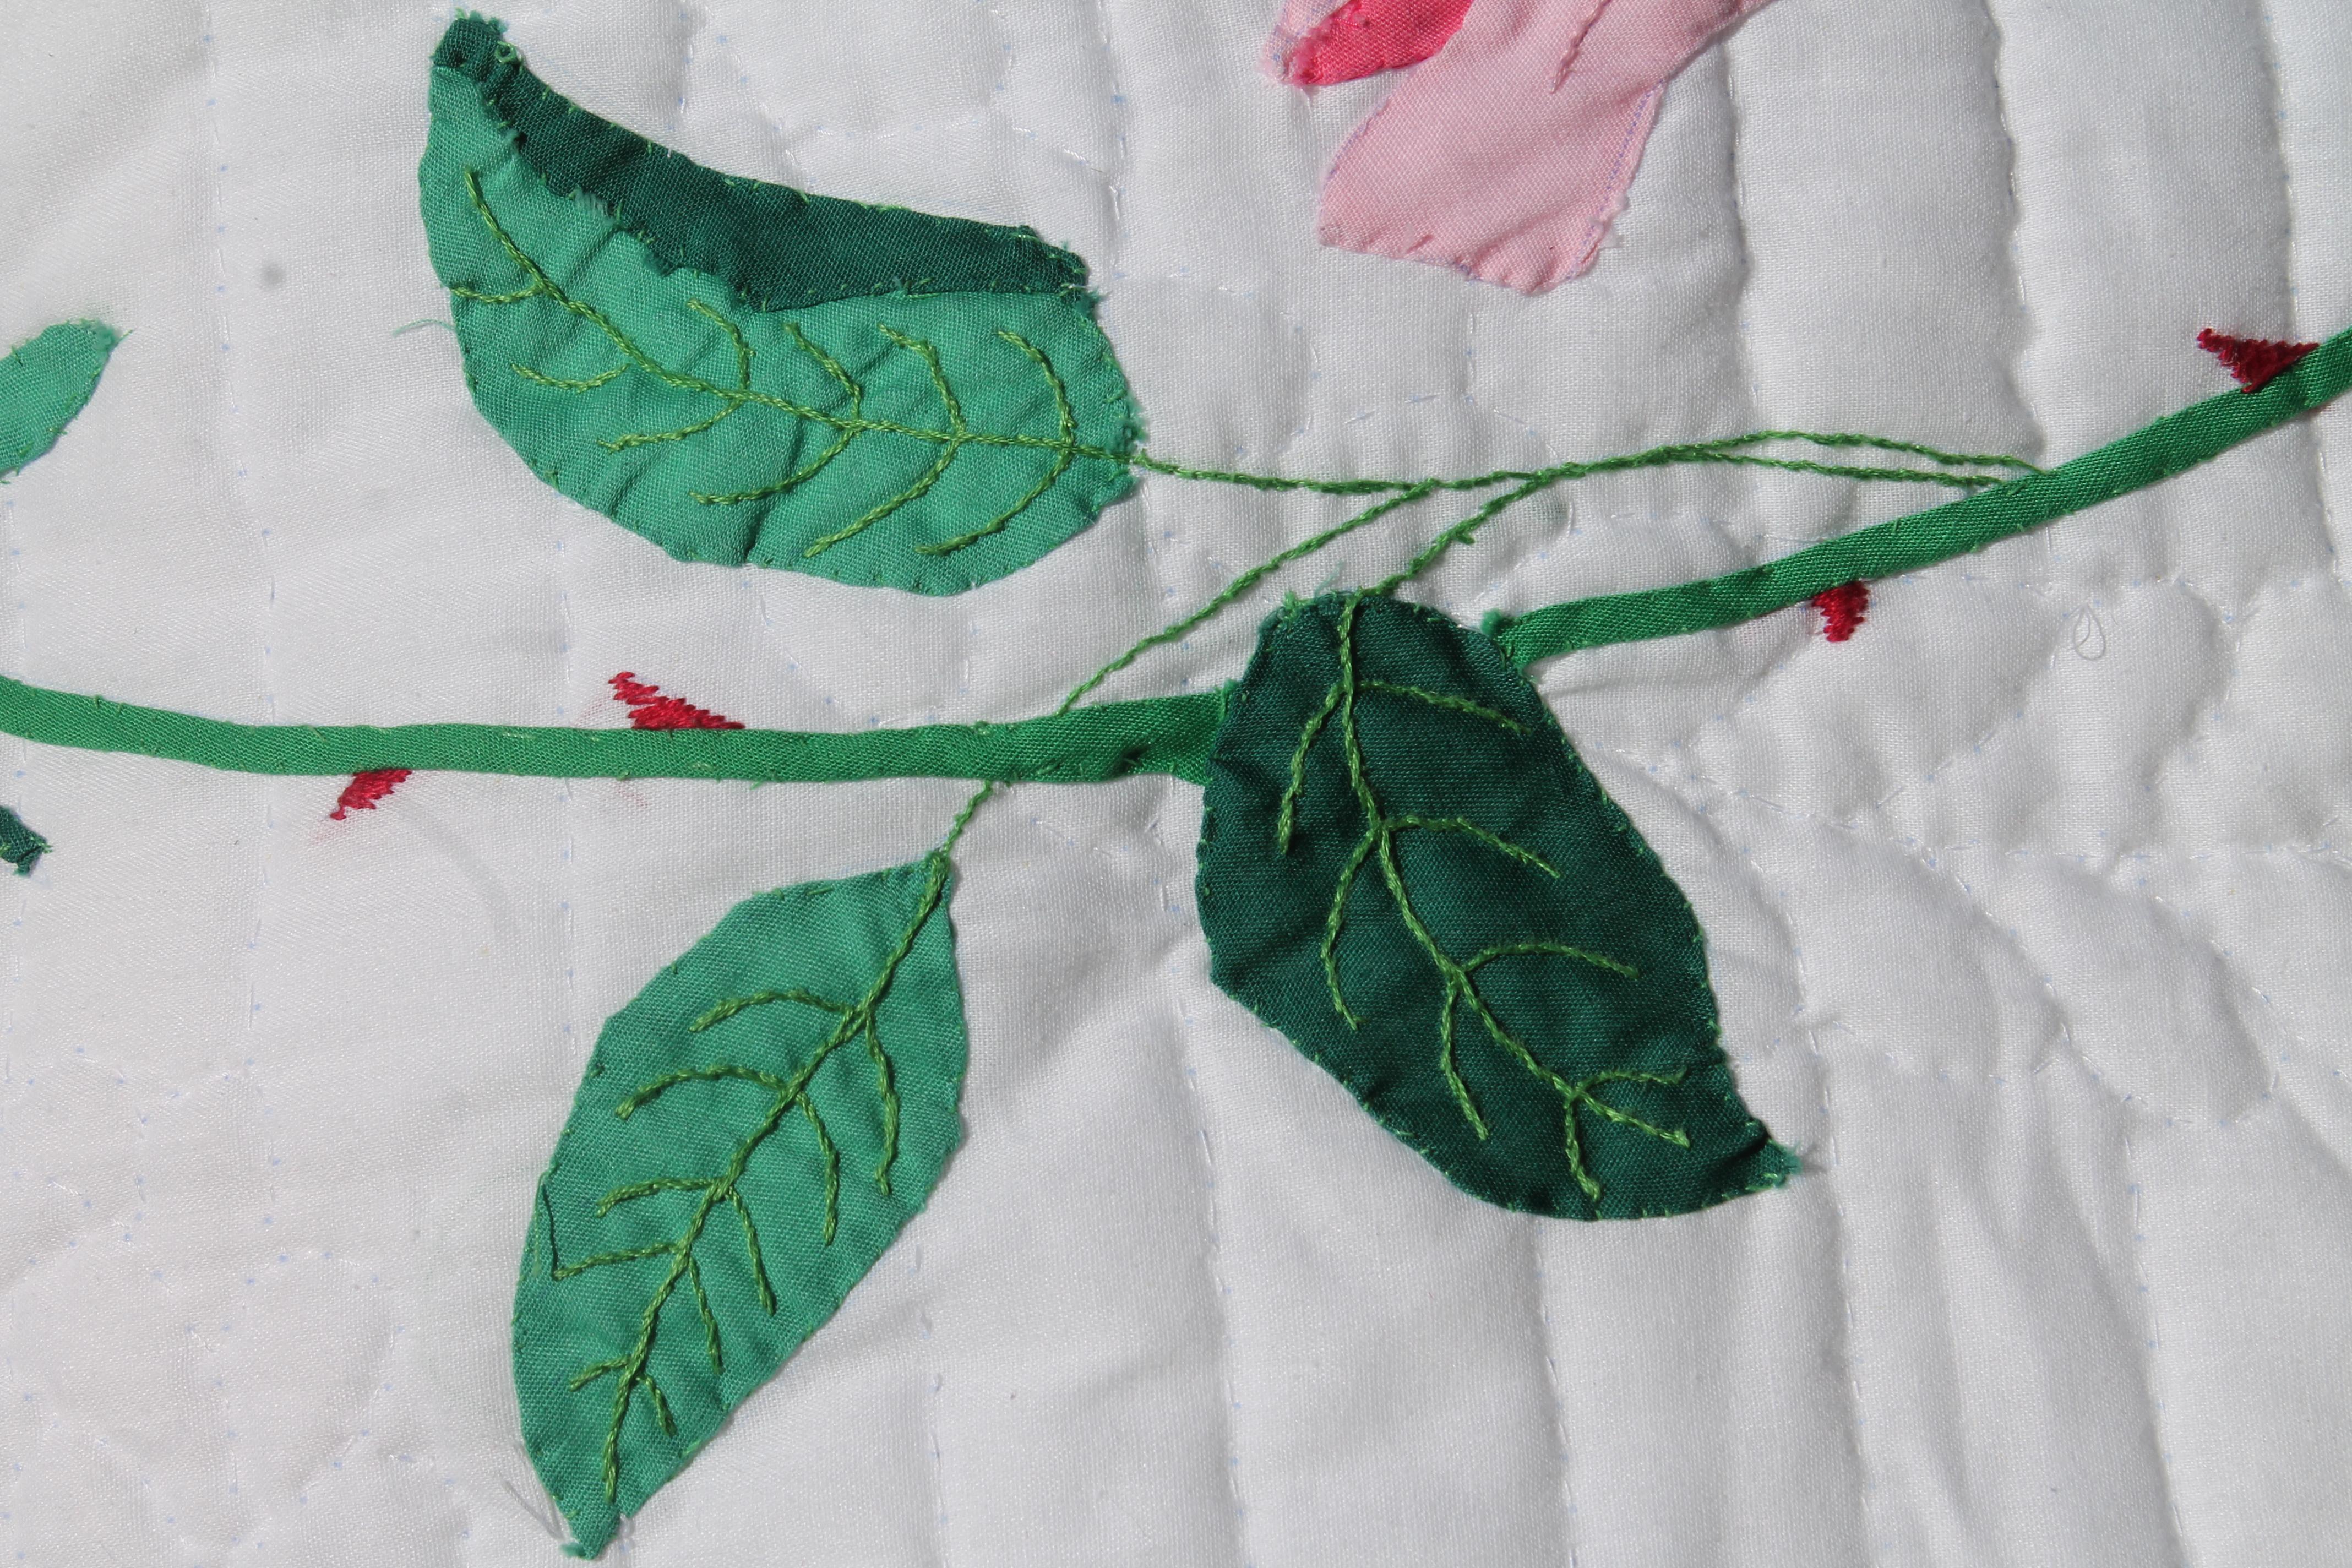 applique rose quilt pattern